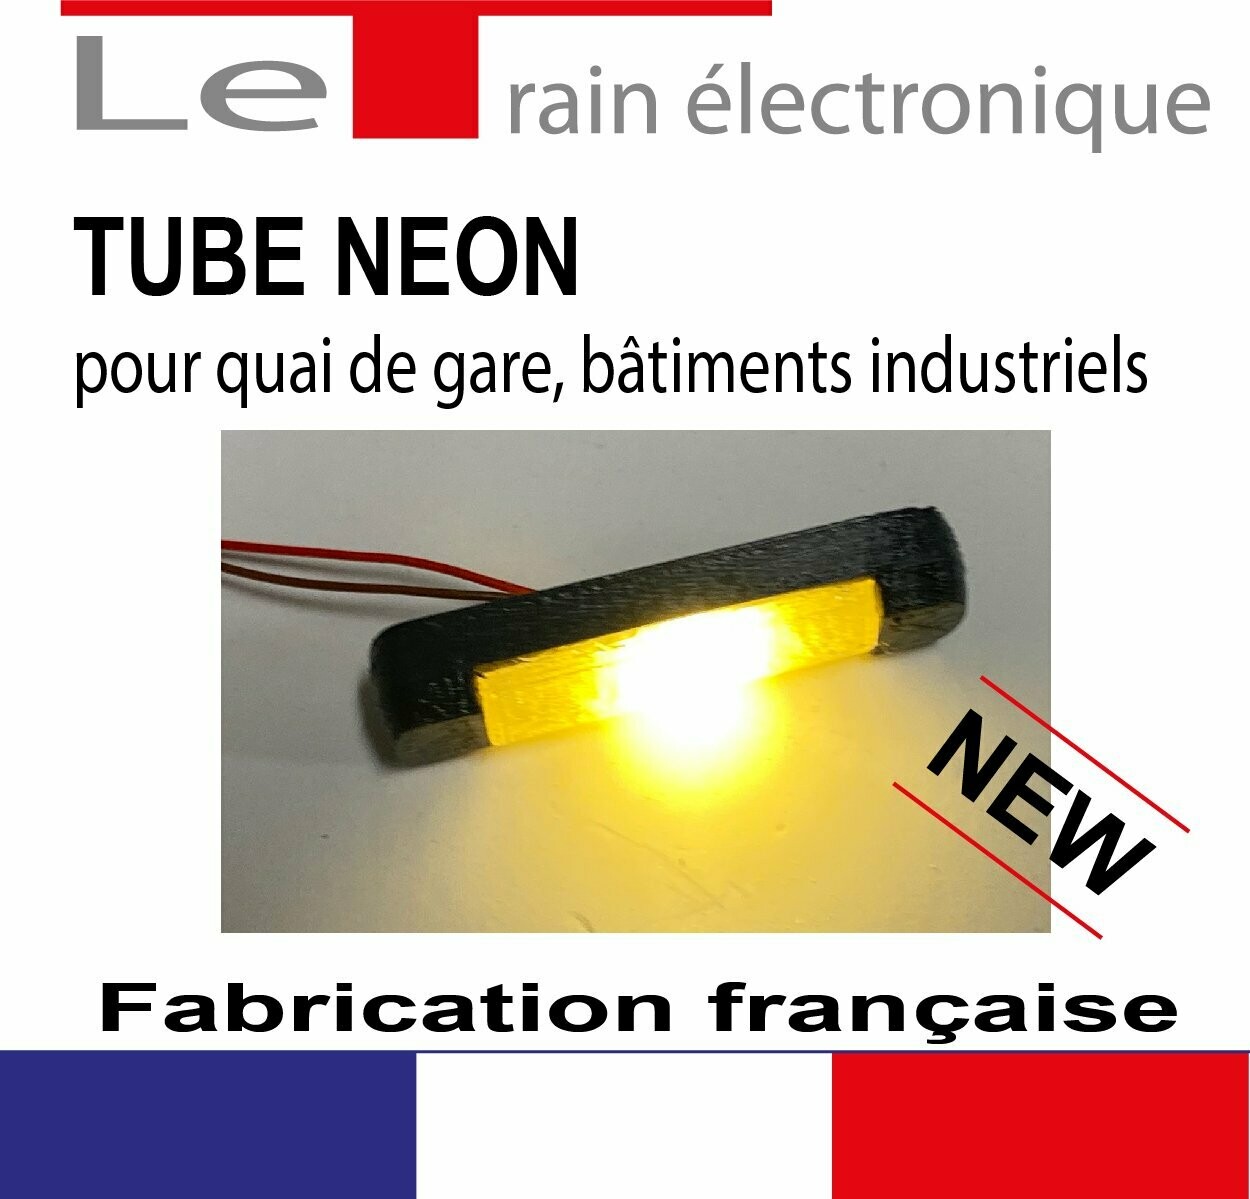 4 tubes néons fonctionnels pour l'éclairage de vos quais ou bâtiments.